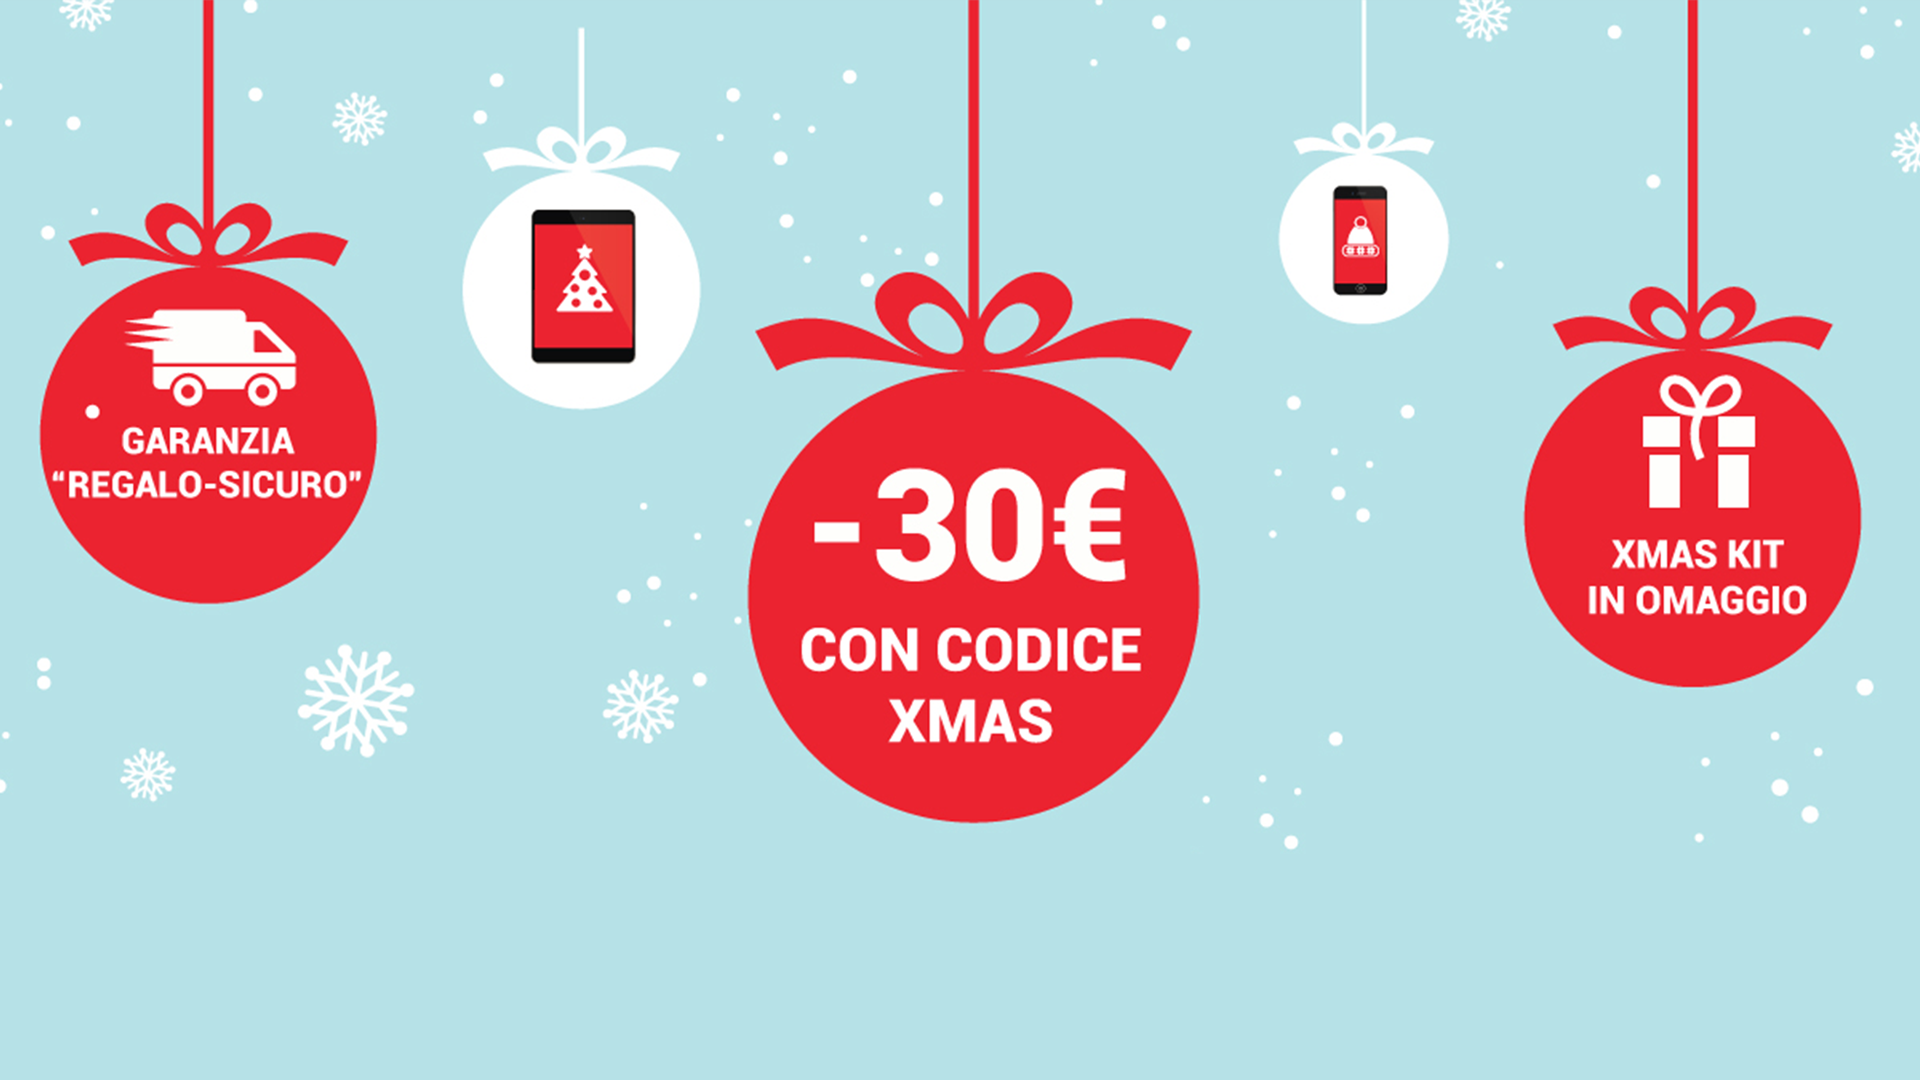 TrenDevice da il via alle offerte natalizie con coupon da 30 Euro e garanzia “Regalo-Sicuro”